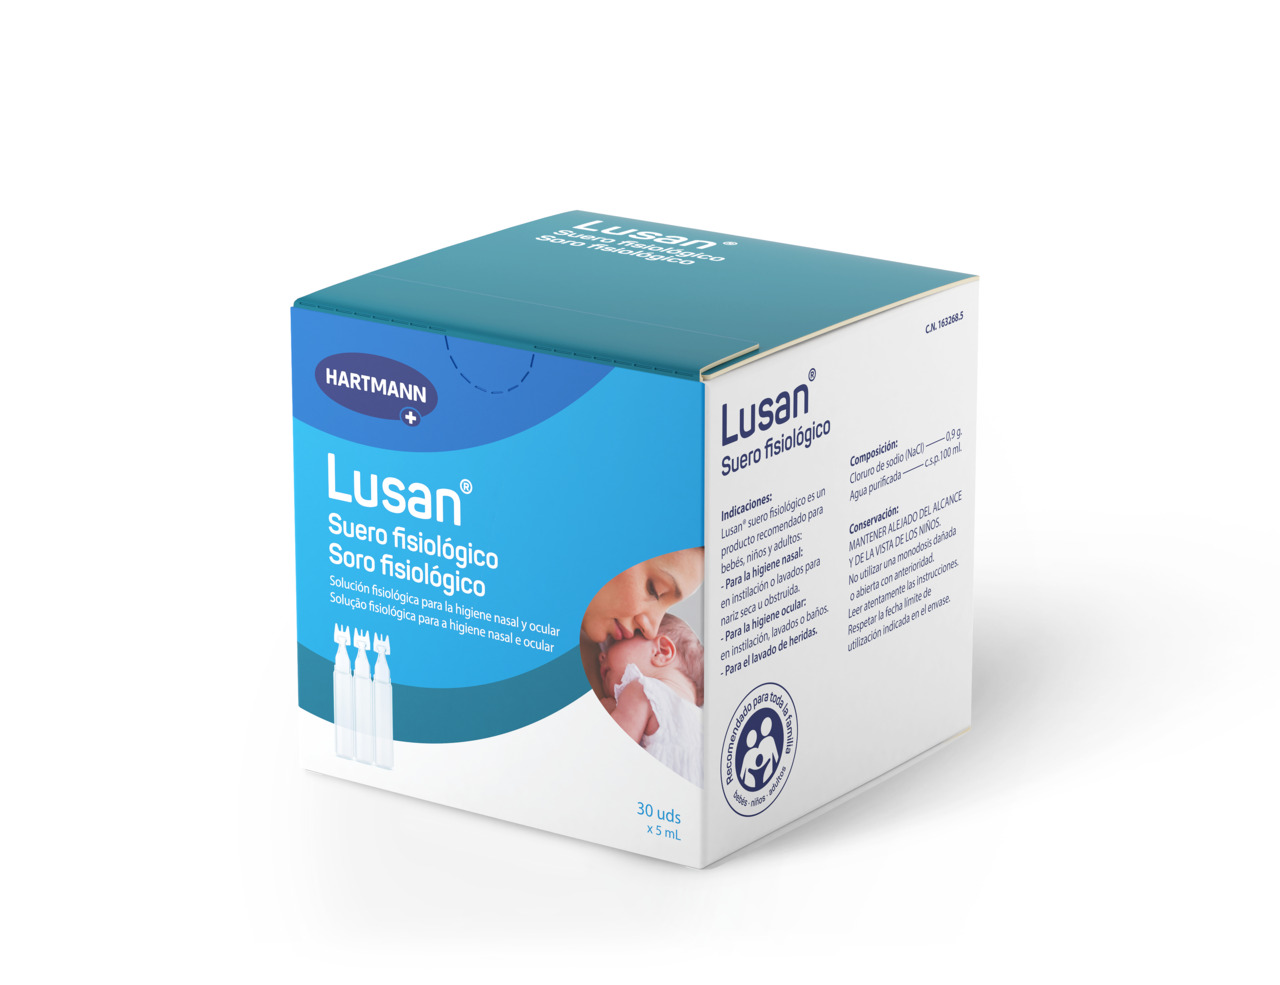 Lusan® suero fisiológico – HARTMANN Direct